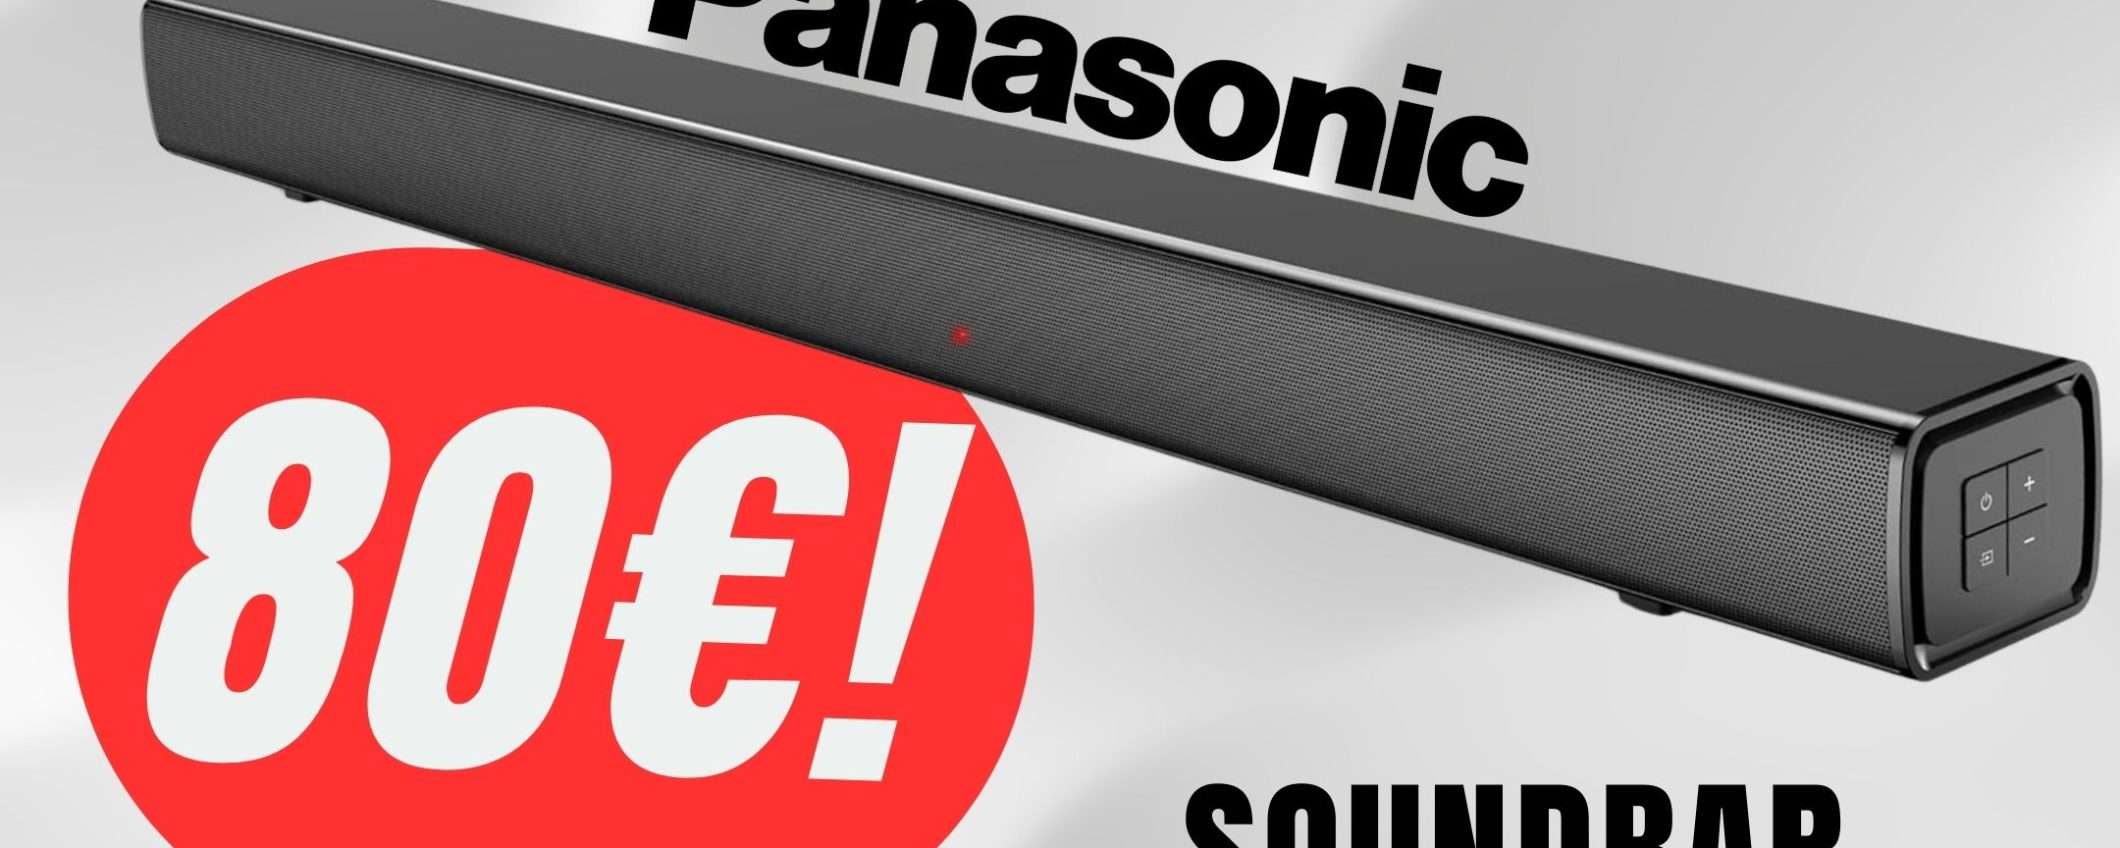 Audio come al CINEMA grazie alla Soundbar Panasonic (a soli 80€!)